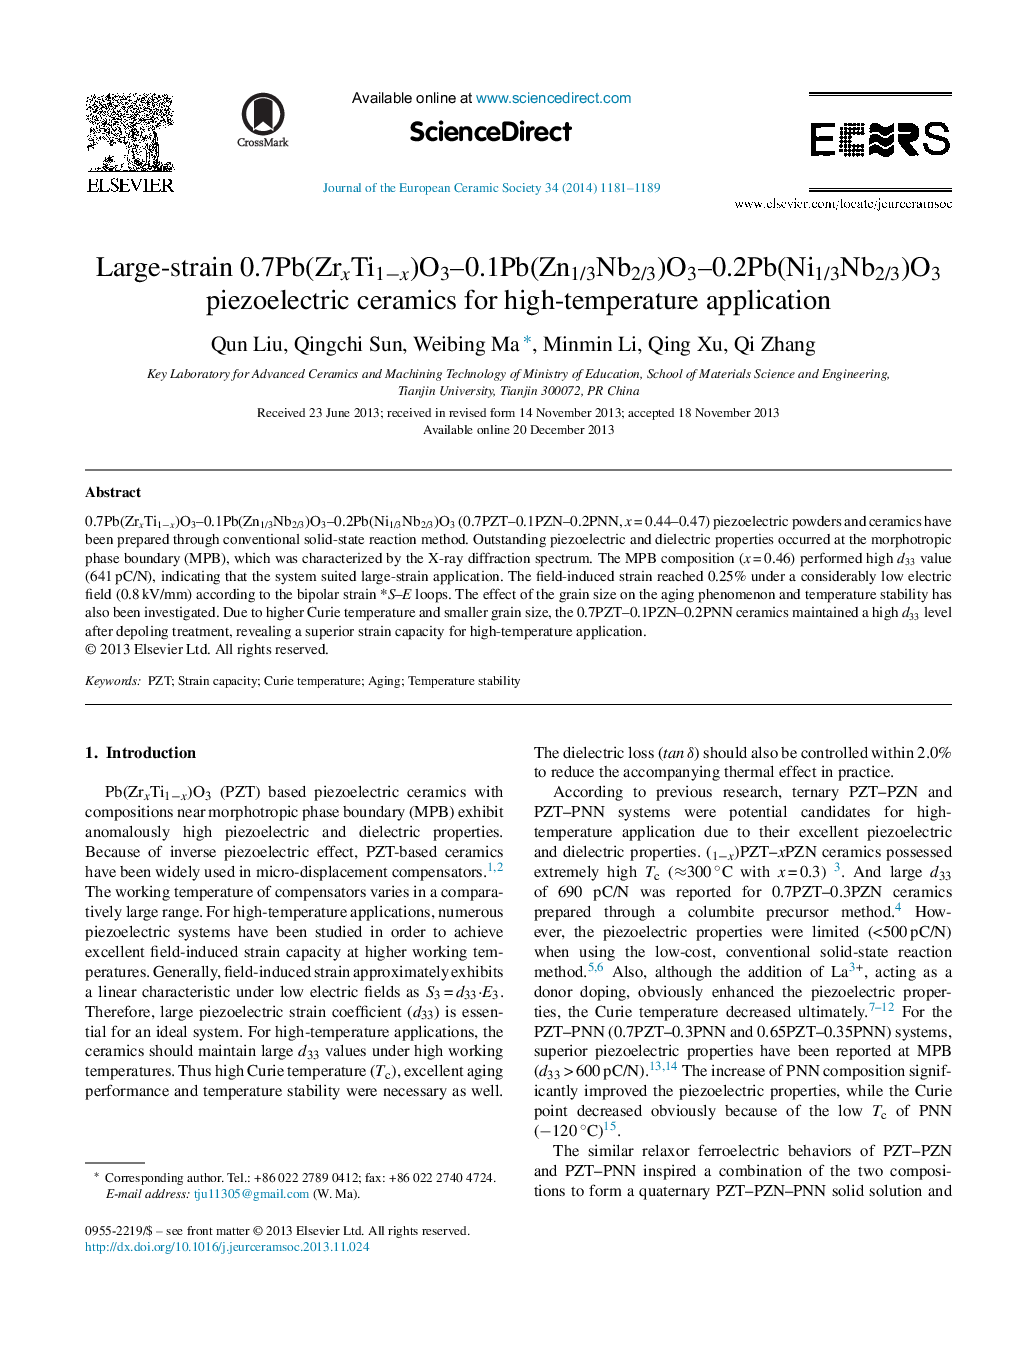 Large-strain 0.7Pb(ZrxTi1−x)O3–0.1Pb(Zn1/3Nb2/3)O3–0.2Pb(Ni1/3Nb2/3)O3 piezoelectric ceramics for high-temperature application